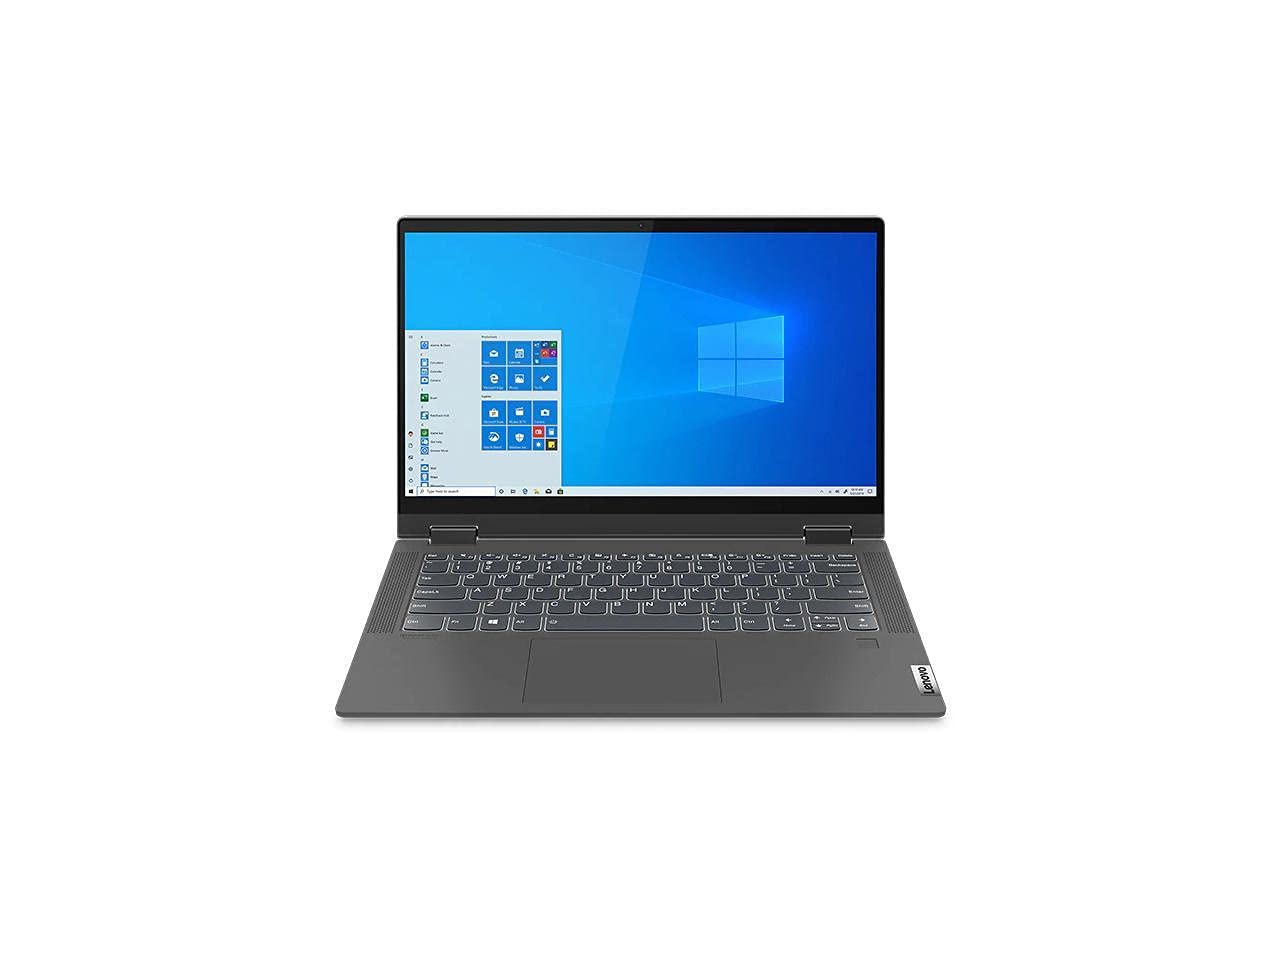 Lenovo Flex 5 14" FHD IPS 2-in-1 Touchscreen Laptop | AMD Ryzen 7 4700U 8-Core | 8GB DDR4 RAM | 512GB SSD | Backlit Keyboard | Fingerprint Reader | Win 10 | with Laptop Stand Bundled